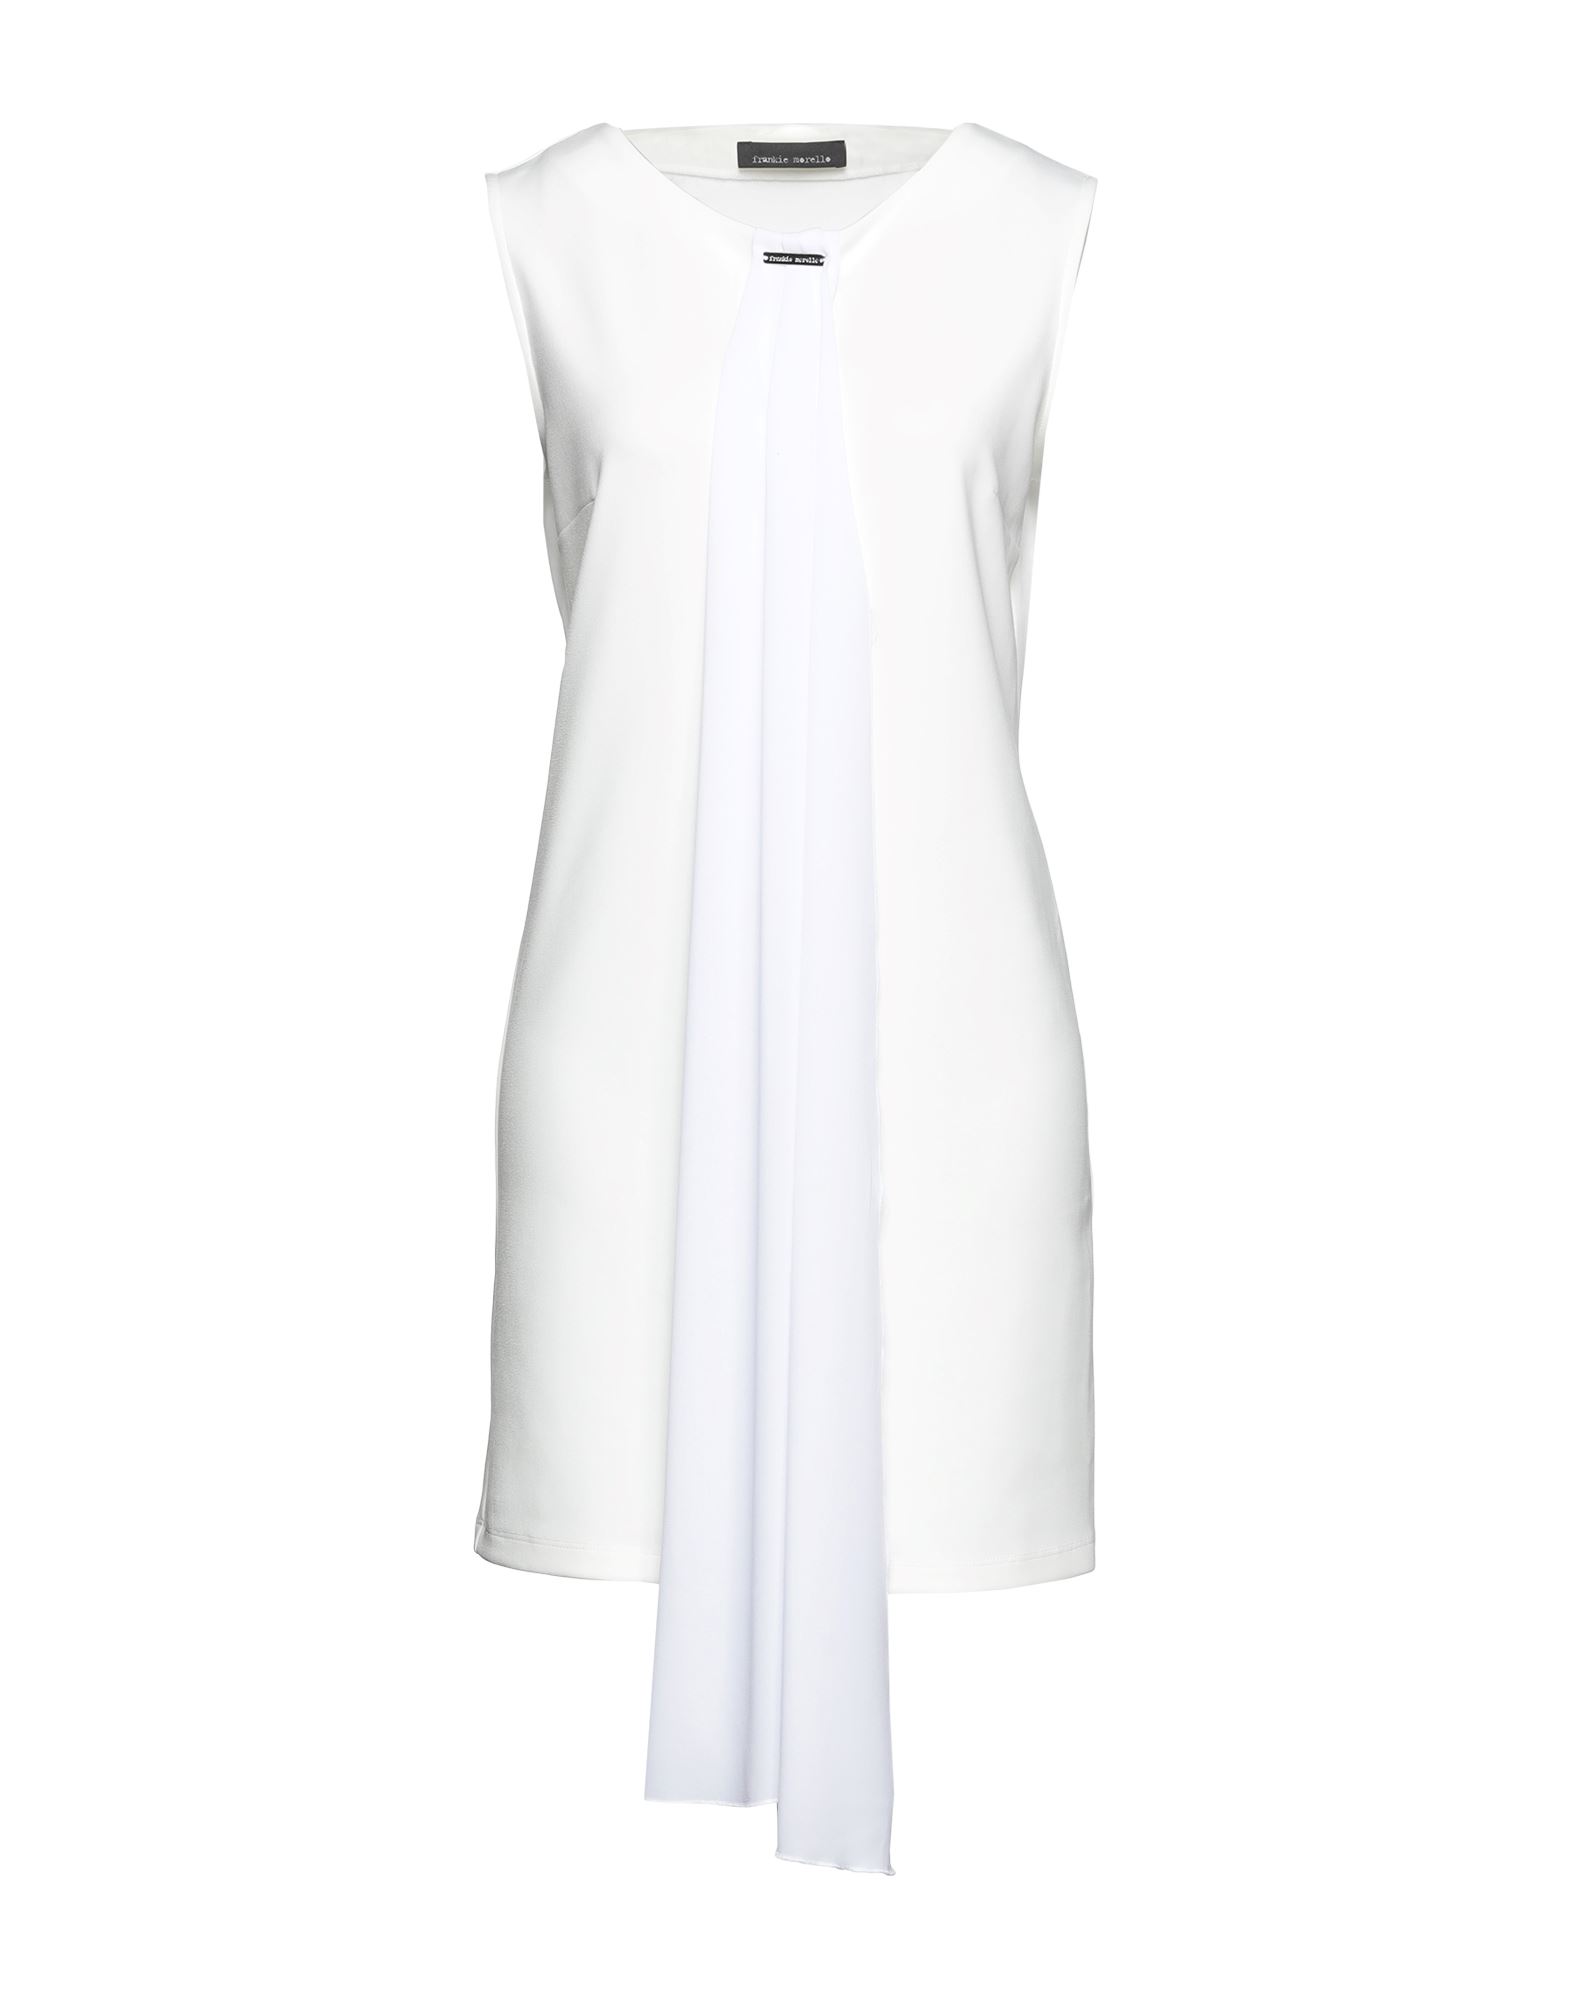 FRANKIE MORELLO FRANKIE MORELLO WOMAN SHORT DRESS WHITE SIZE 10 POLYESTER, ELASTANE